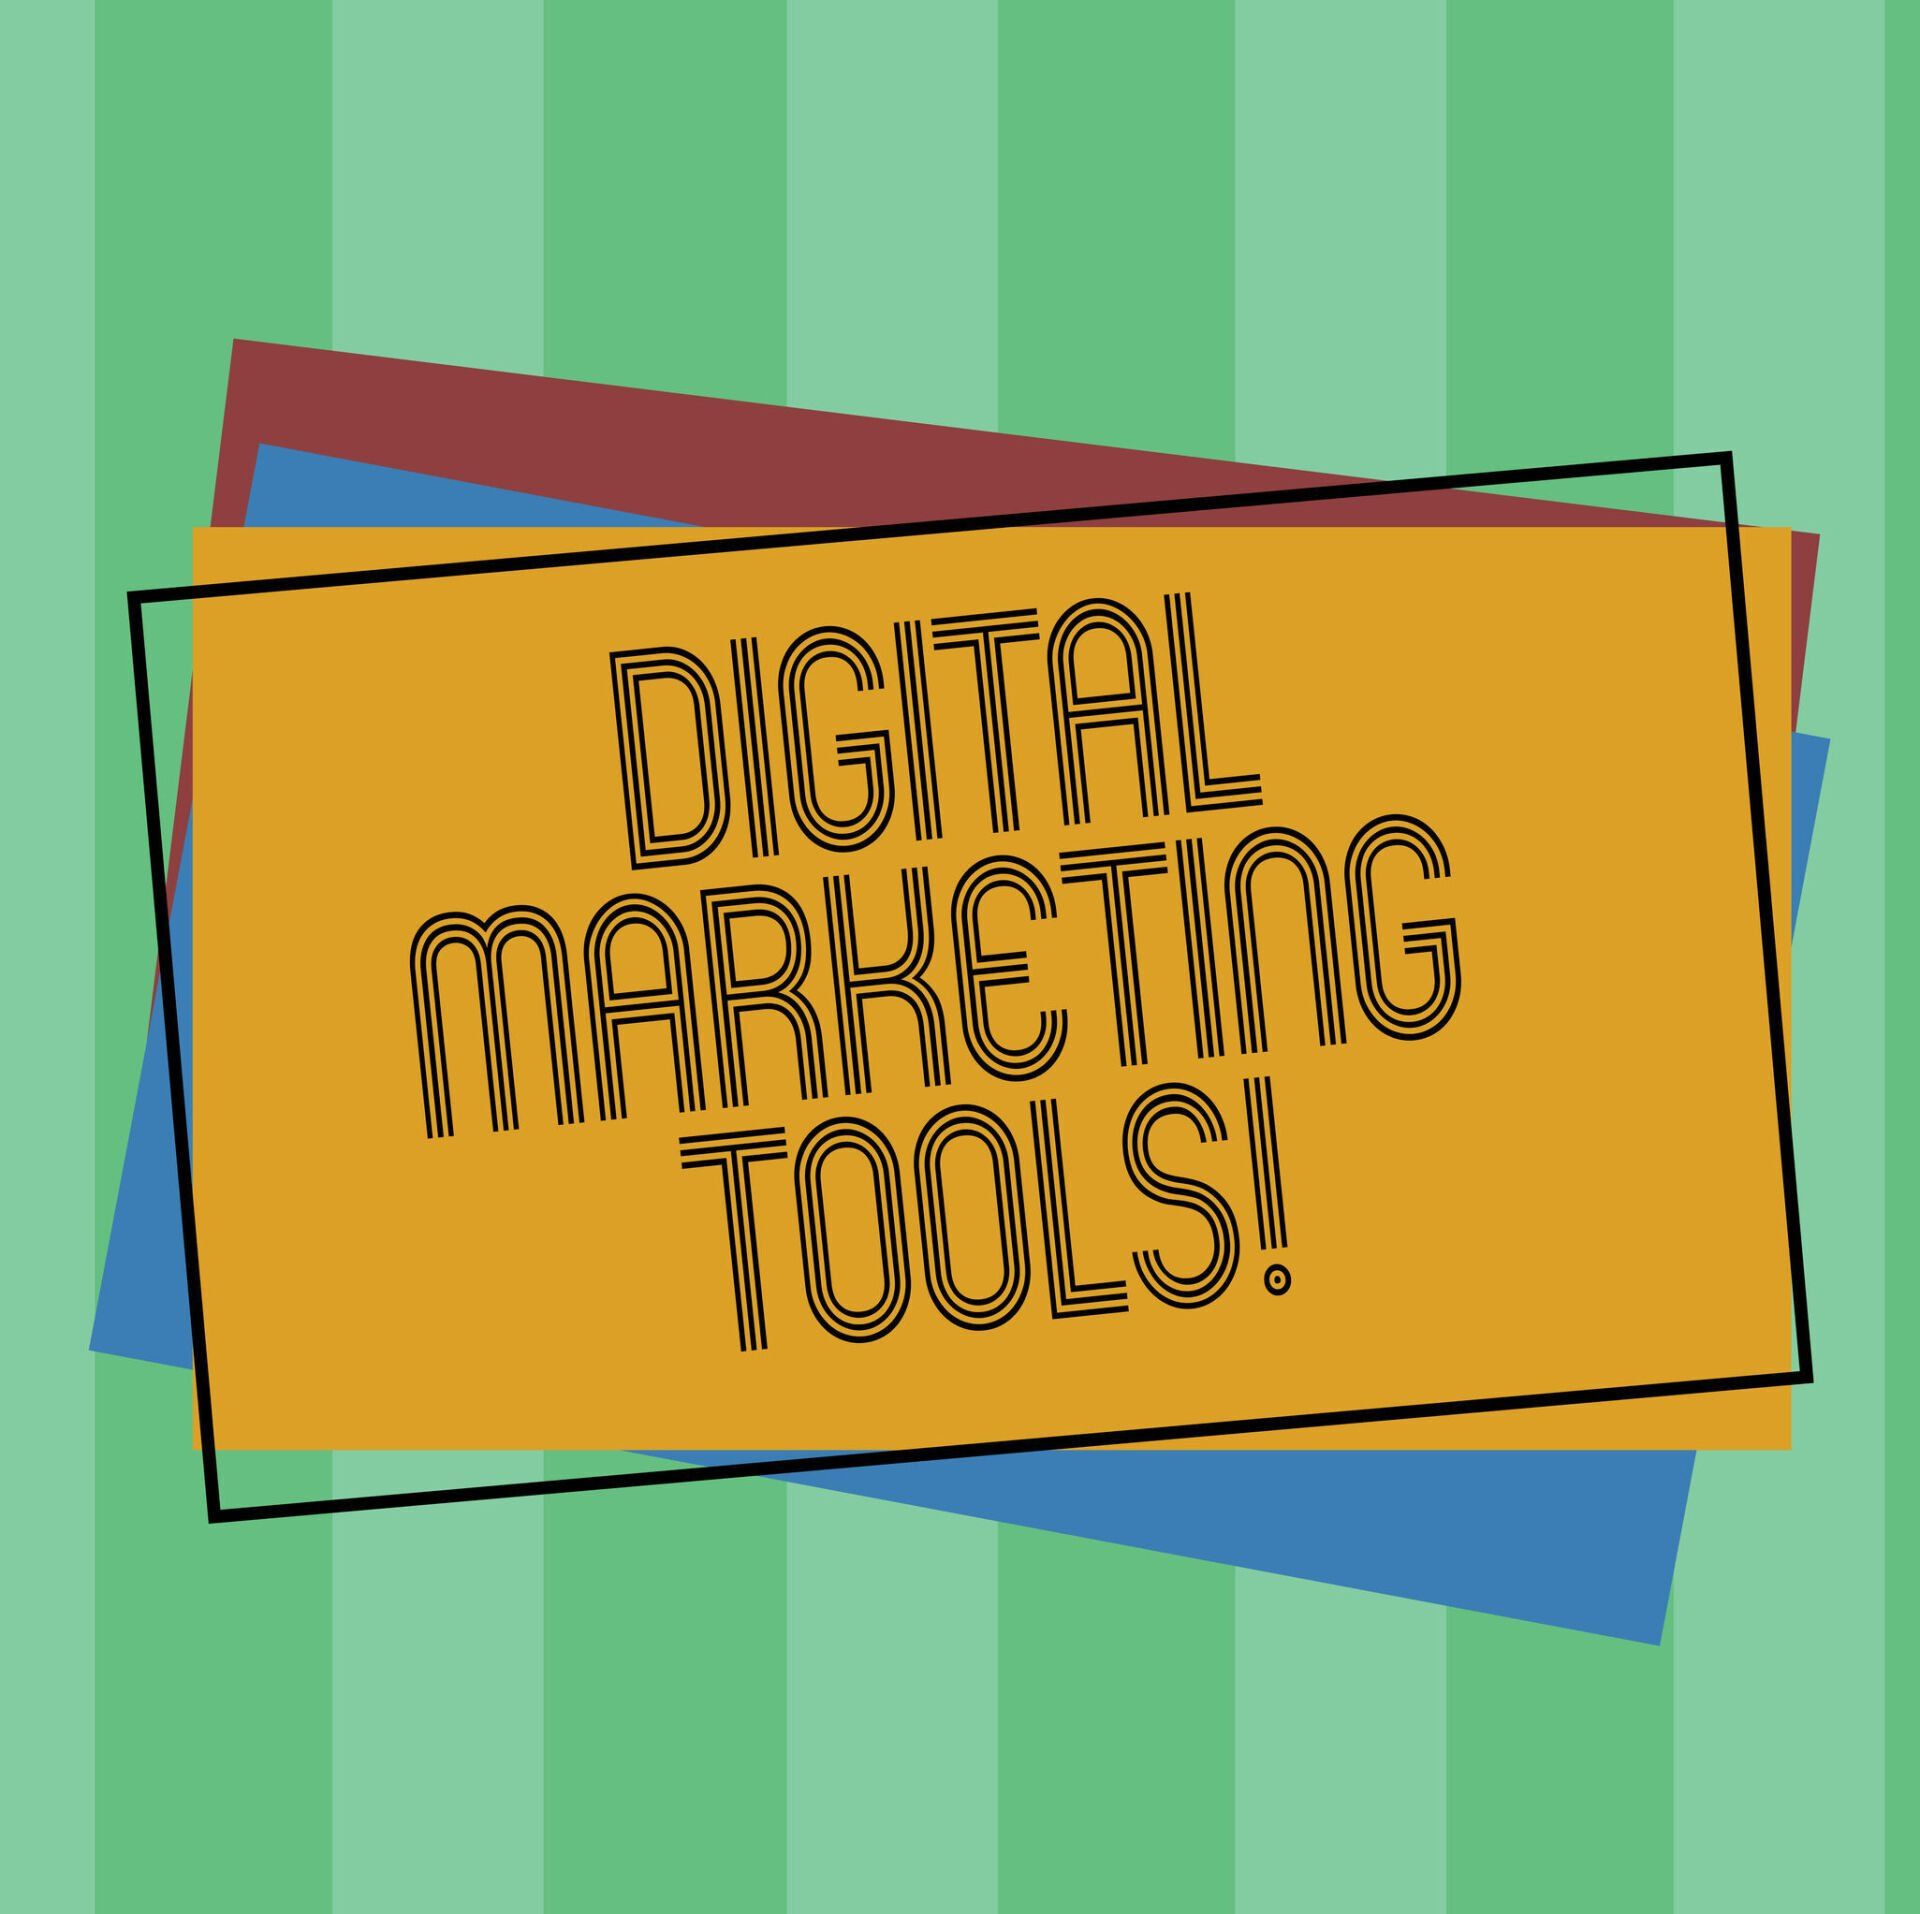 5 top digital marketing tools